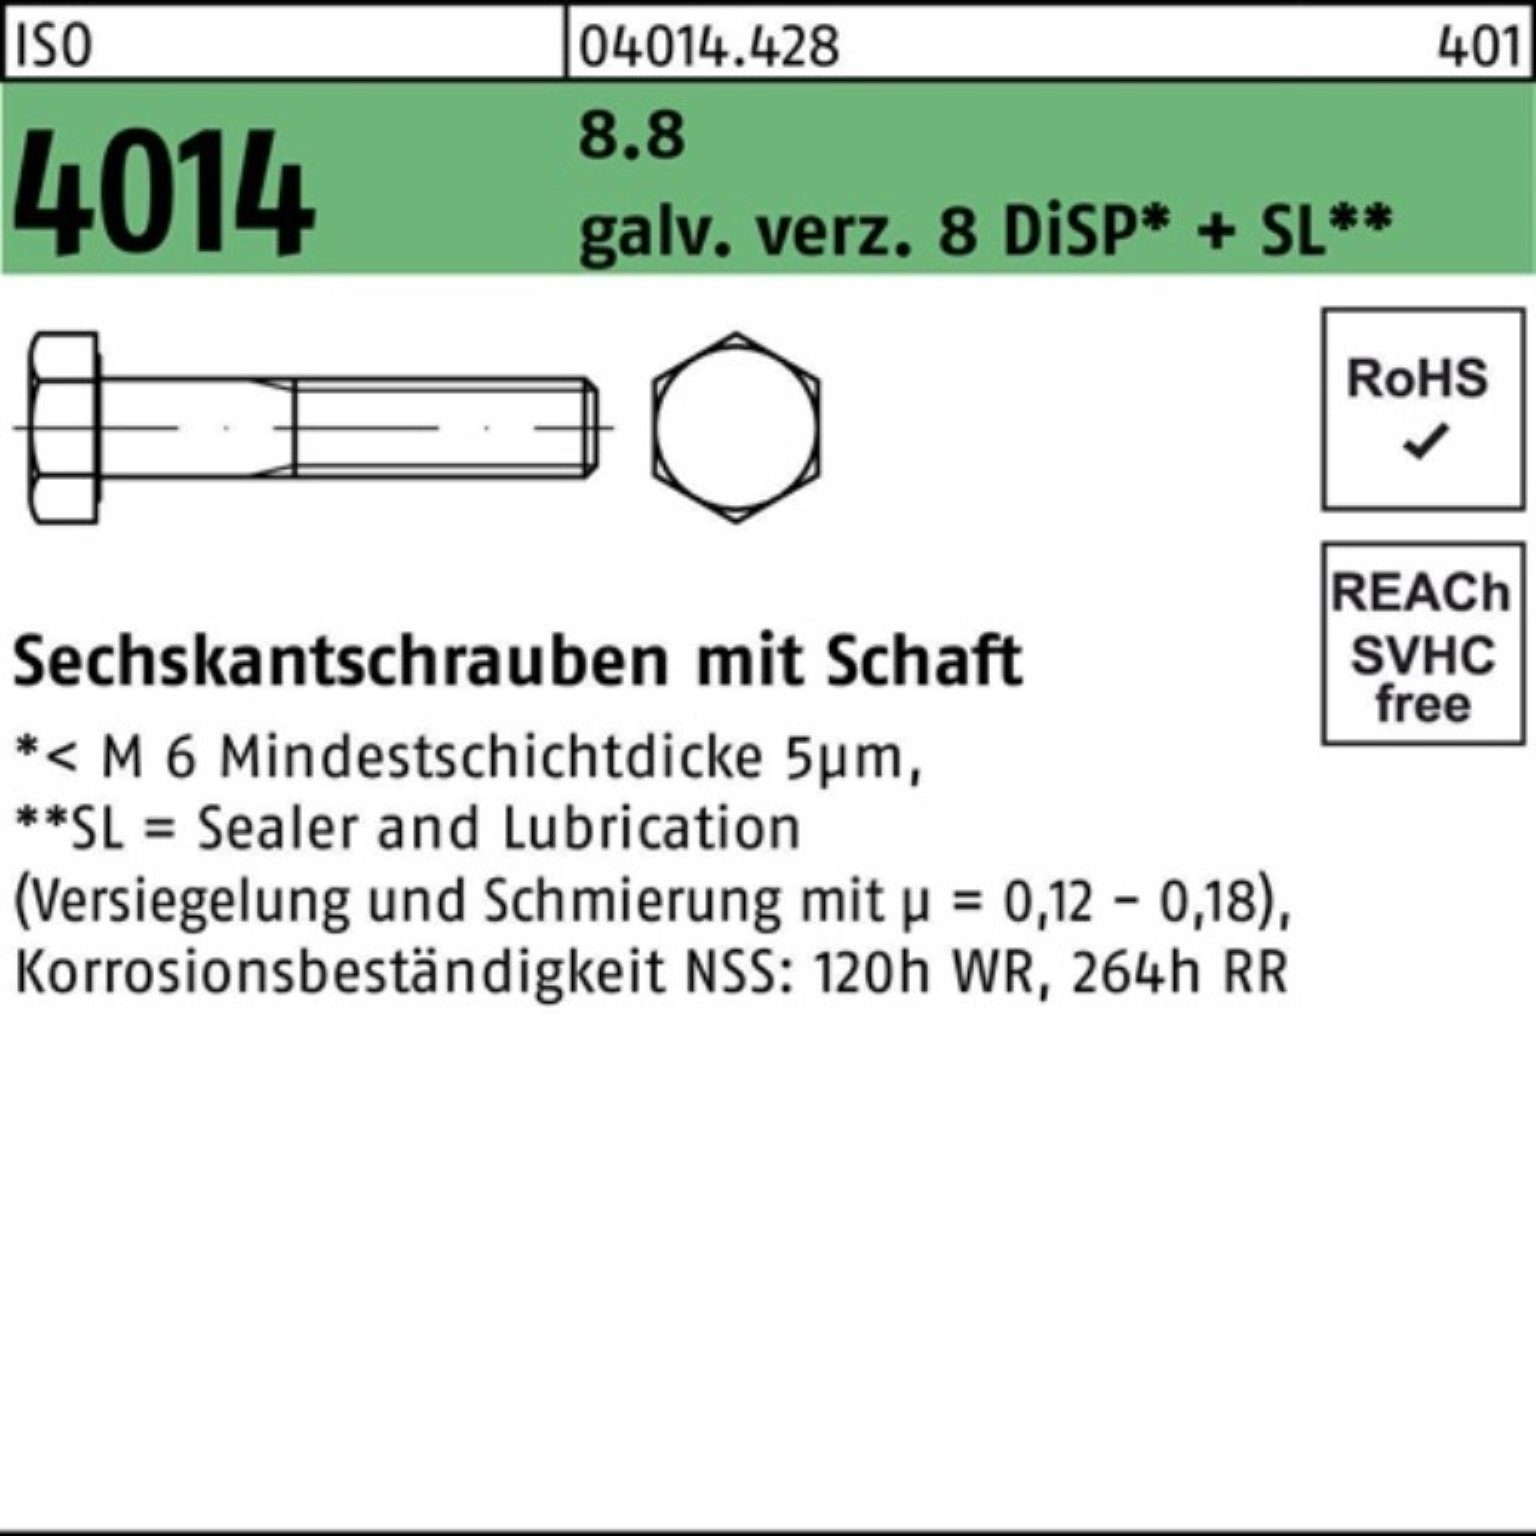 Bufab Sechskantschraube 100er Pack Sechskantschraube ISO 4014 Schaft M10x130 8.8 galv.verz. 8